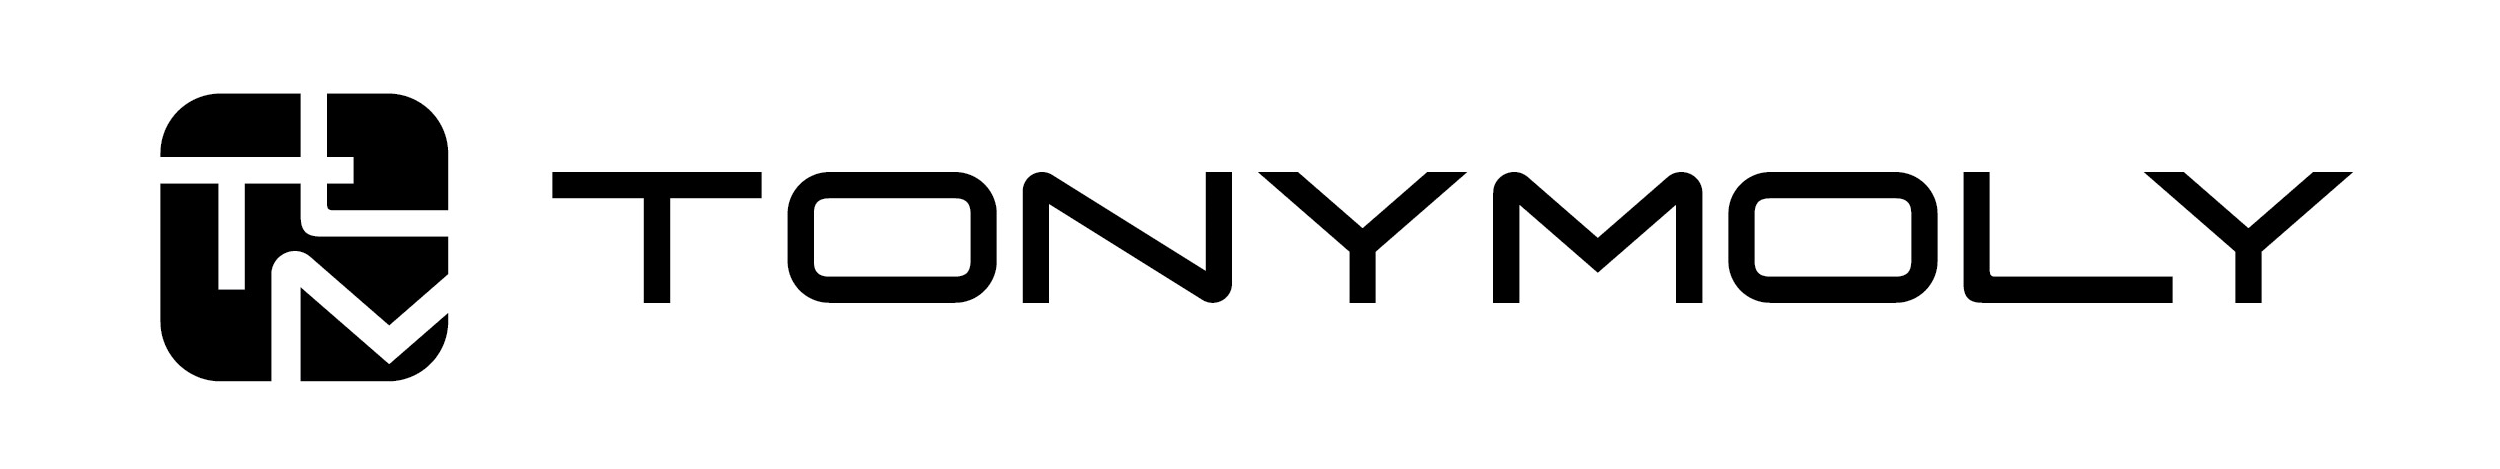 Tony Moly – Logos Download